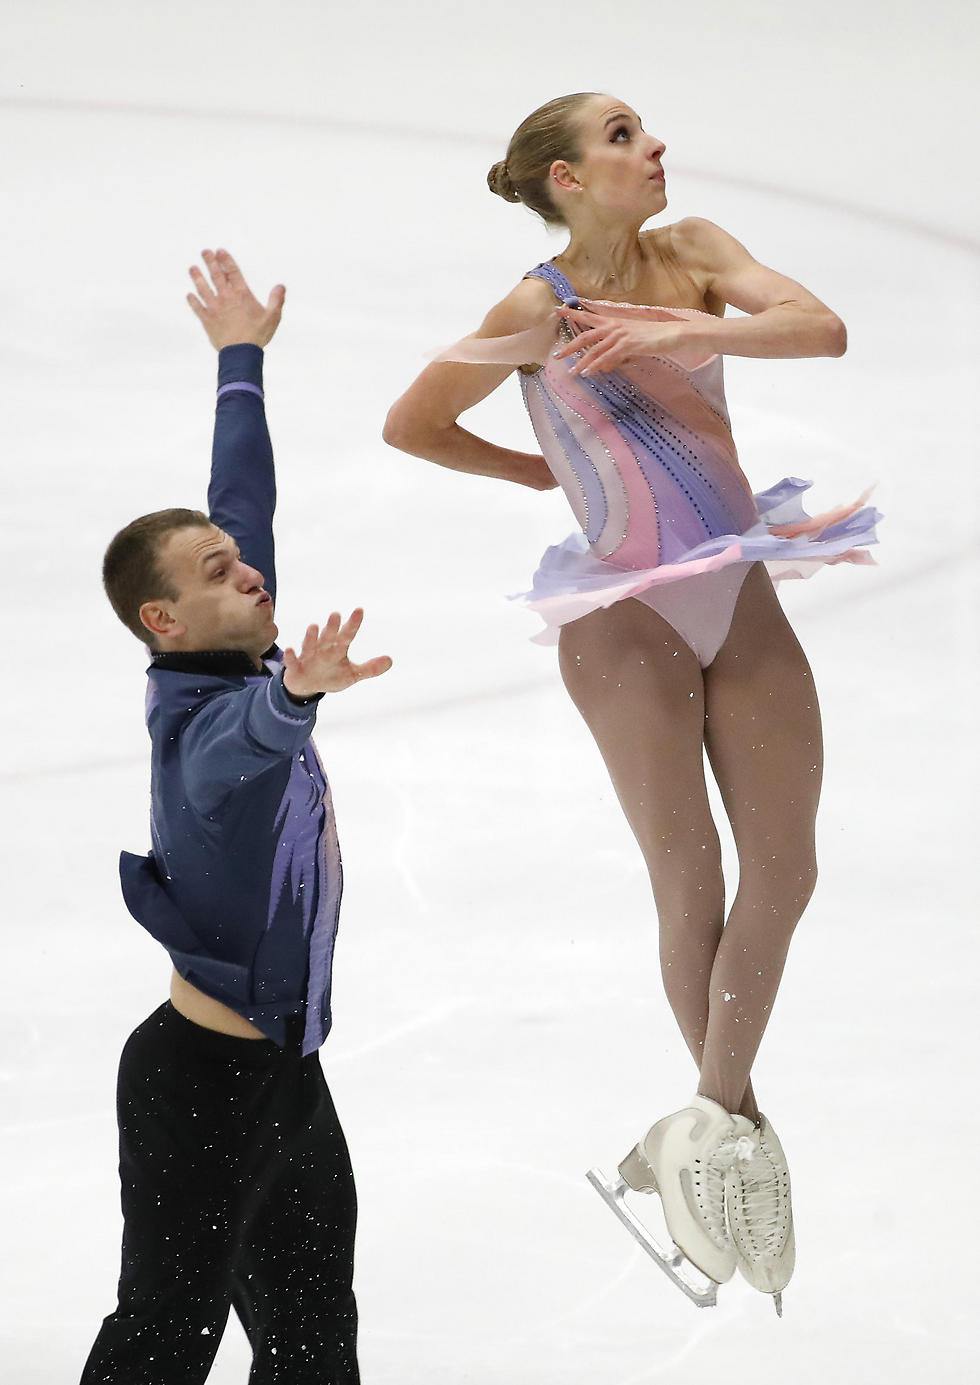 יהיו באולימפיאדת החורף. קונרס וקרסנופולסקי (צילום: רויטרס) (צילום: רויטרס)